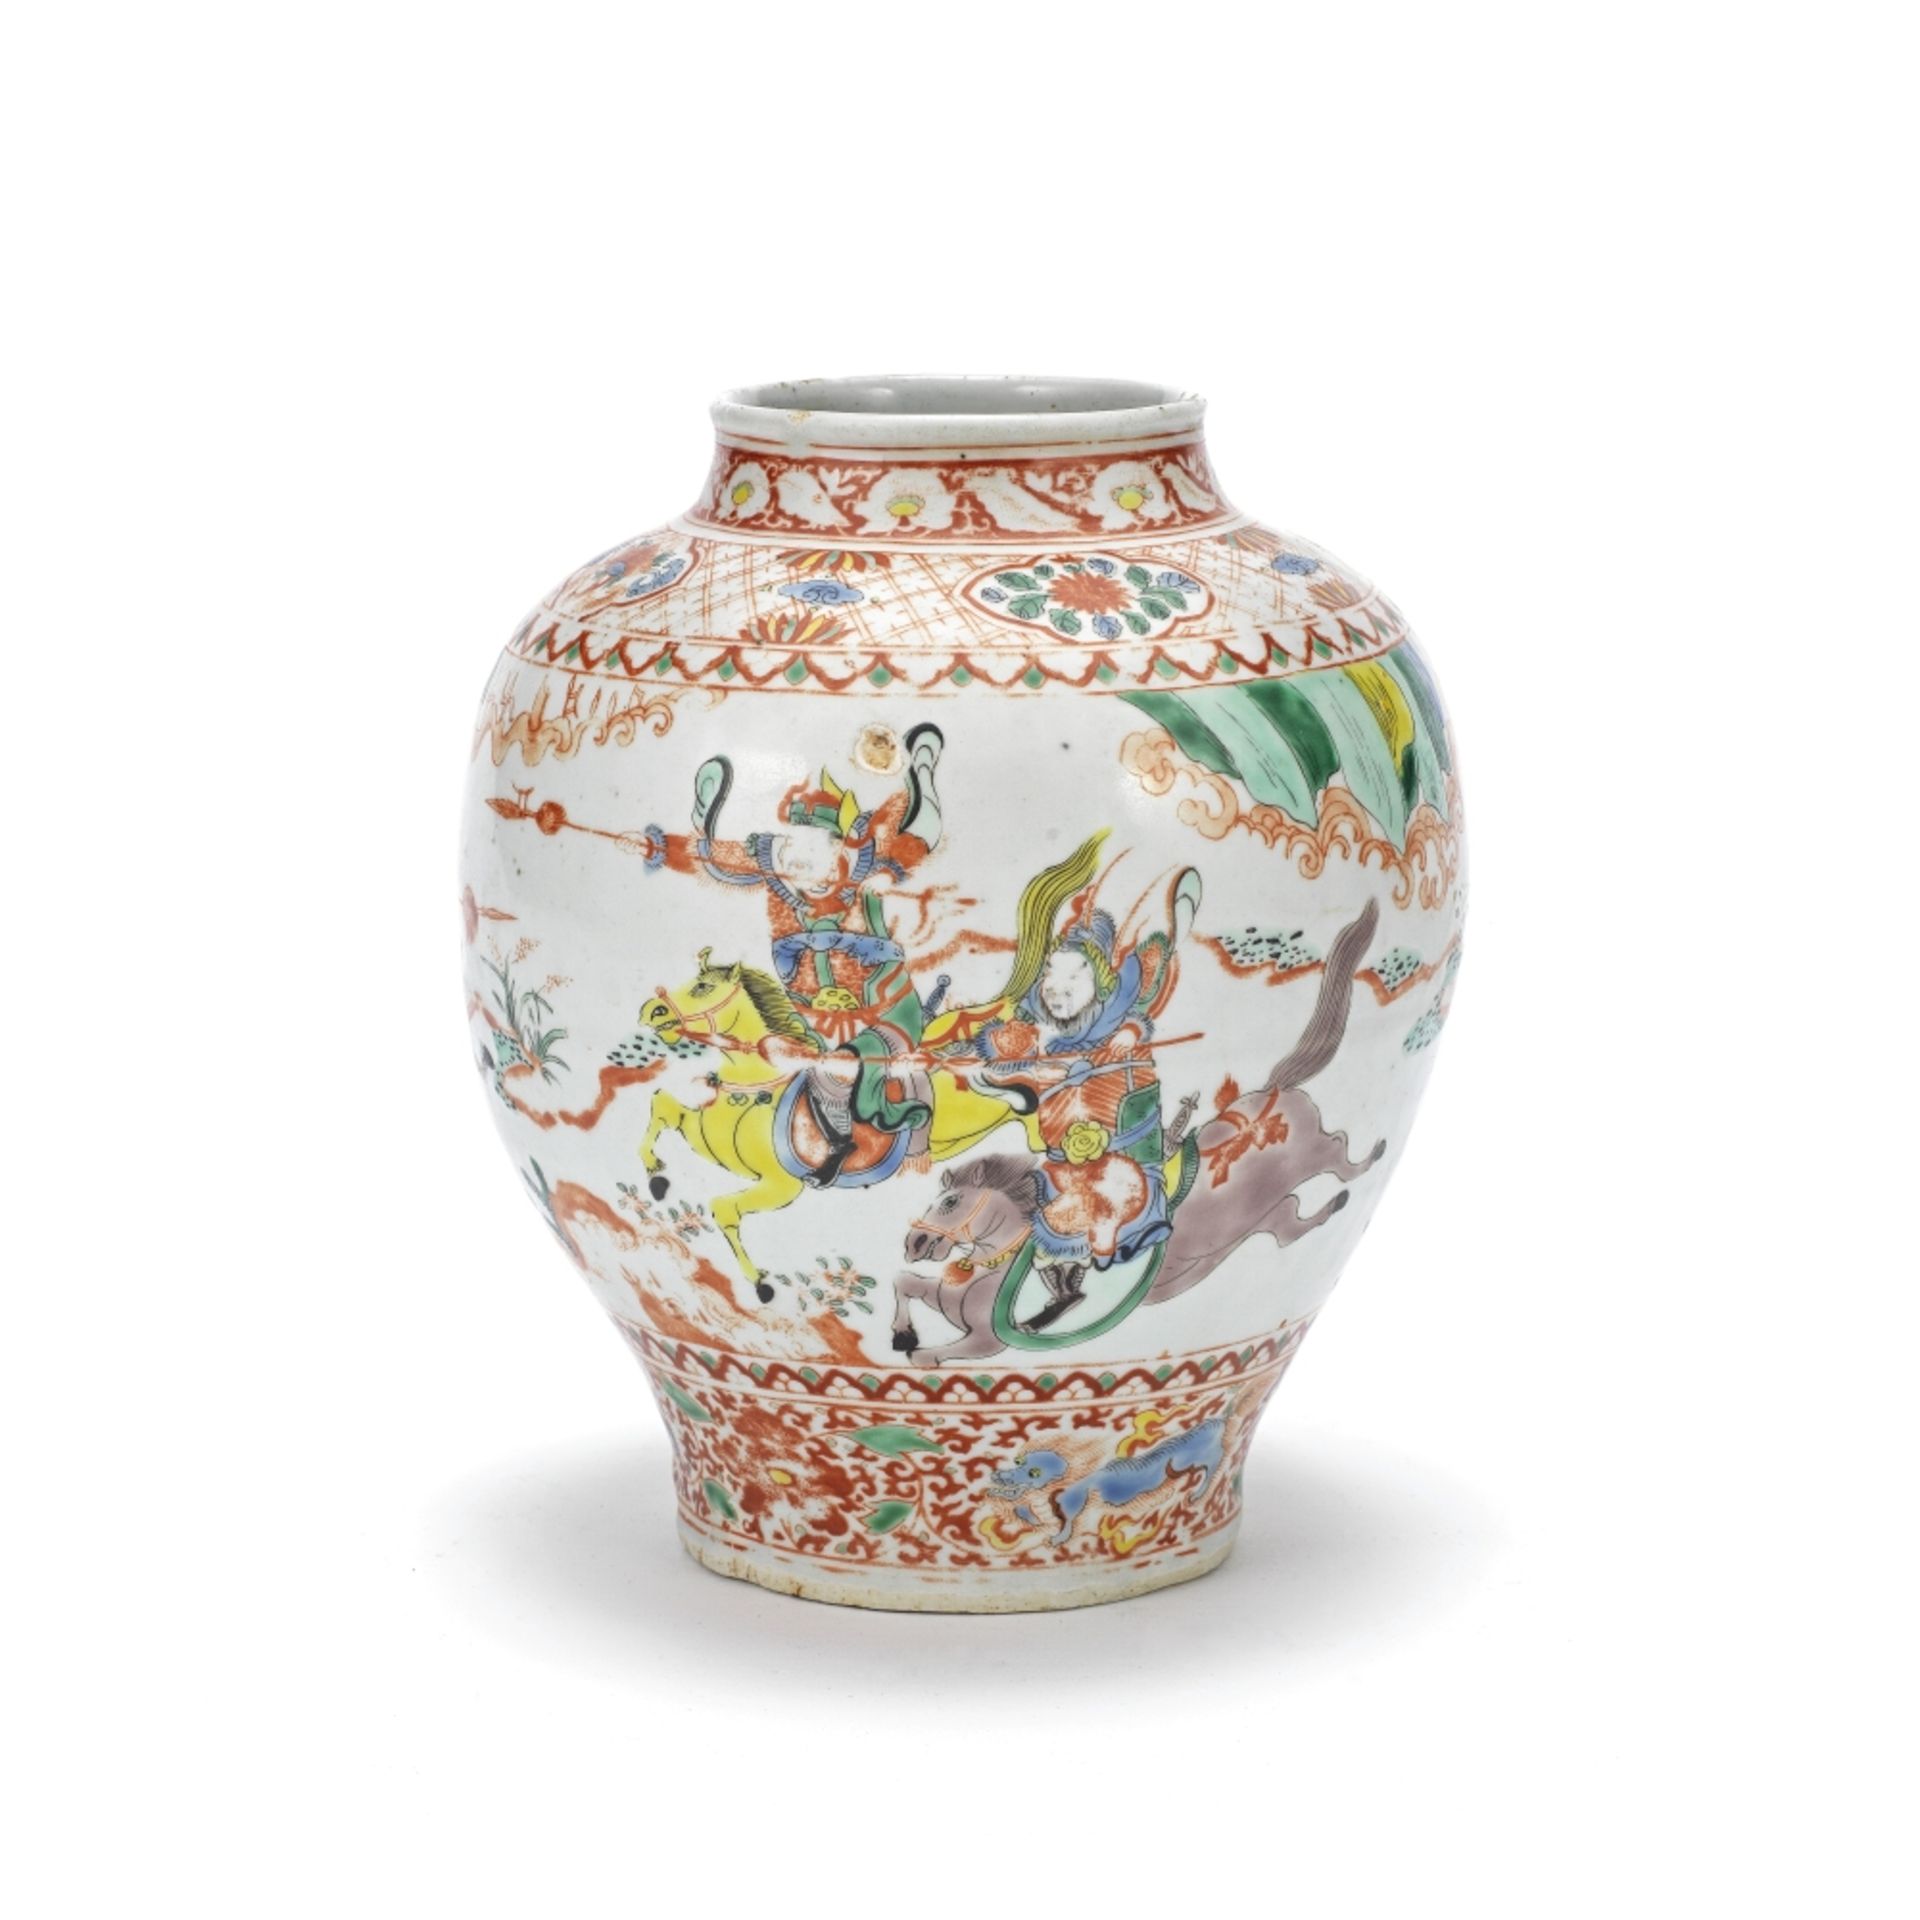 A POLYCHROME ENAMELLED JAR Qing Dynasty